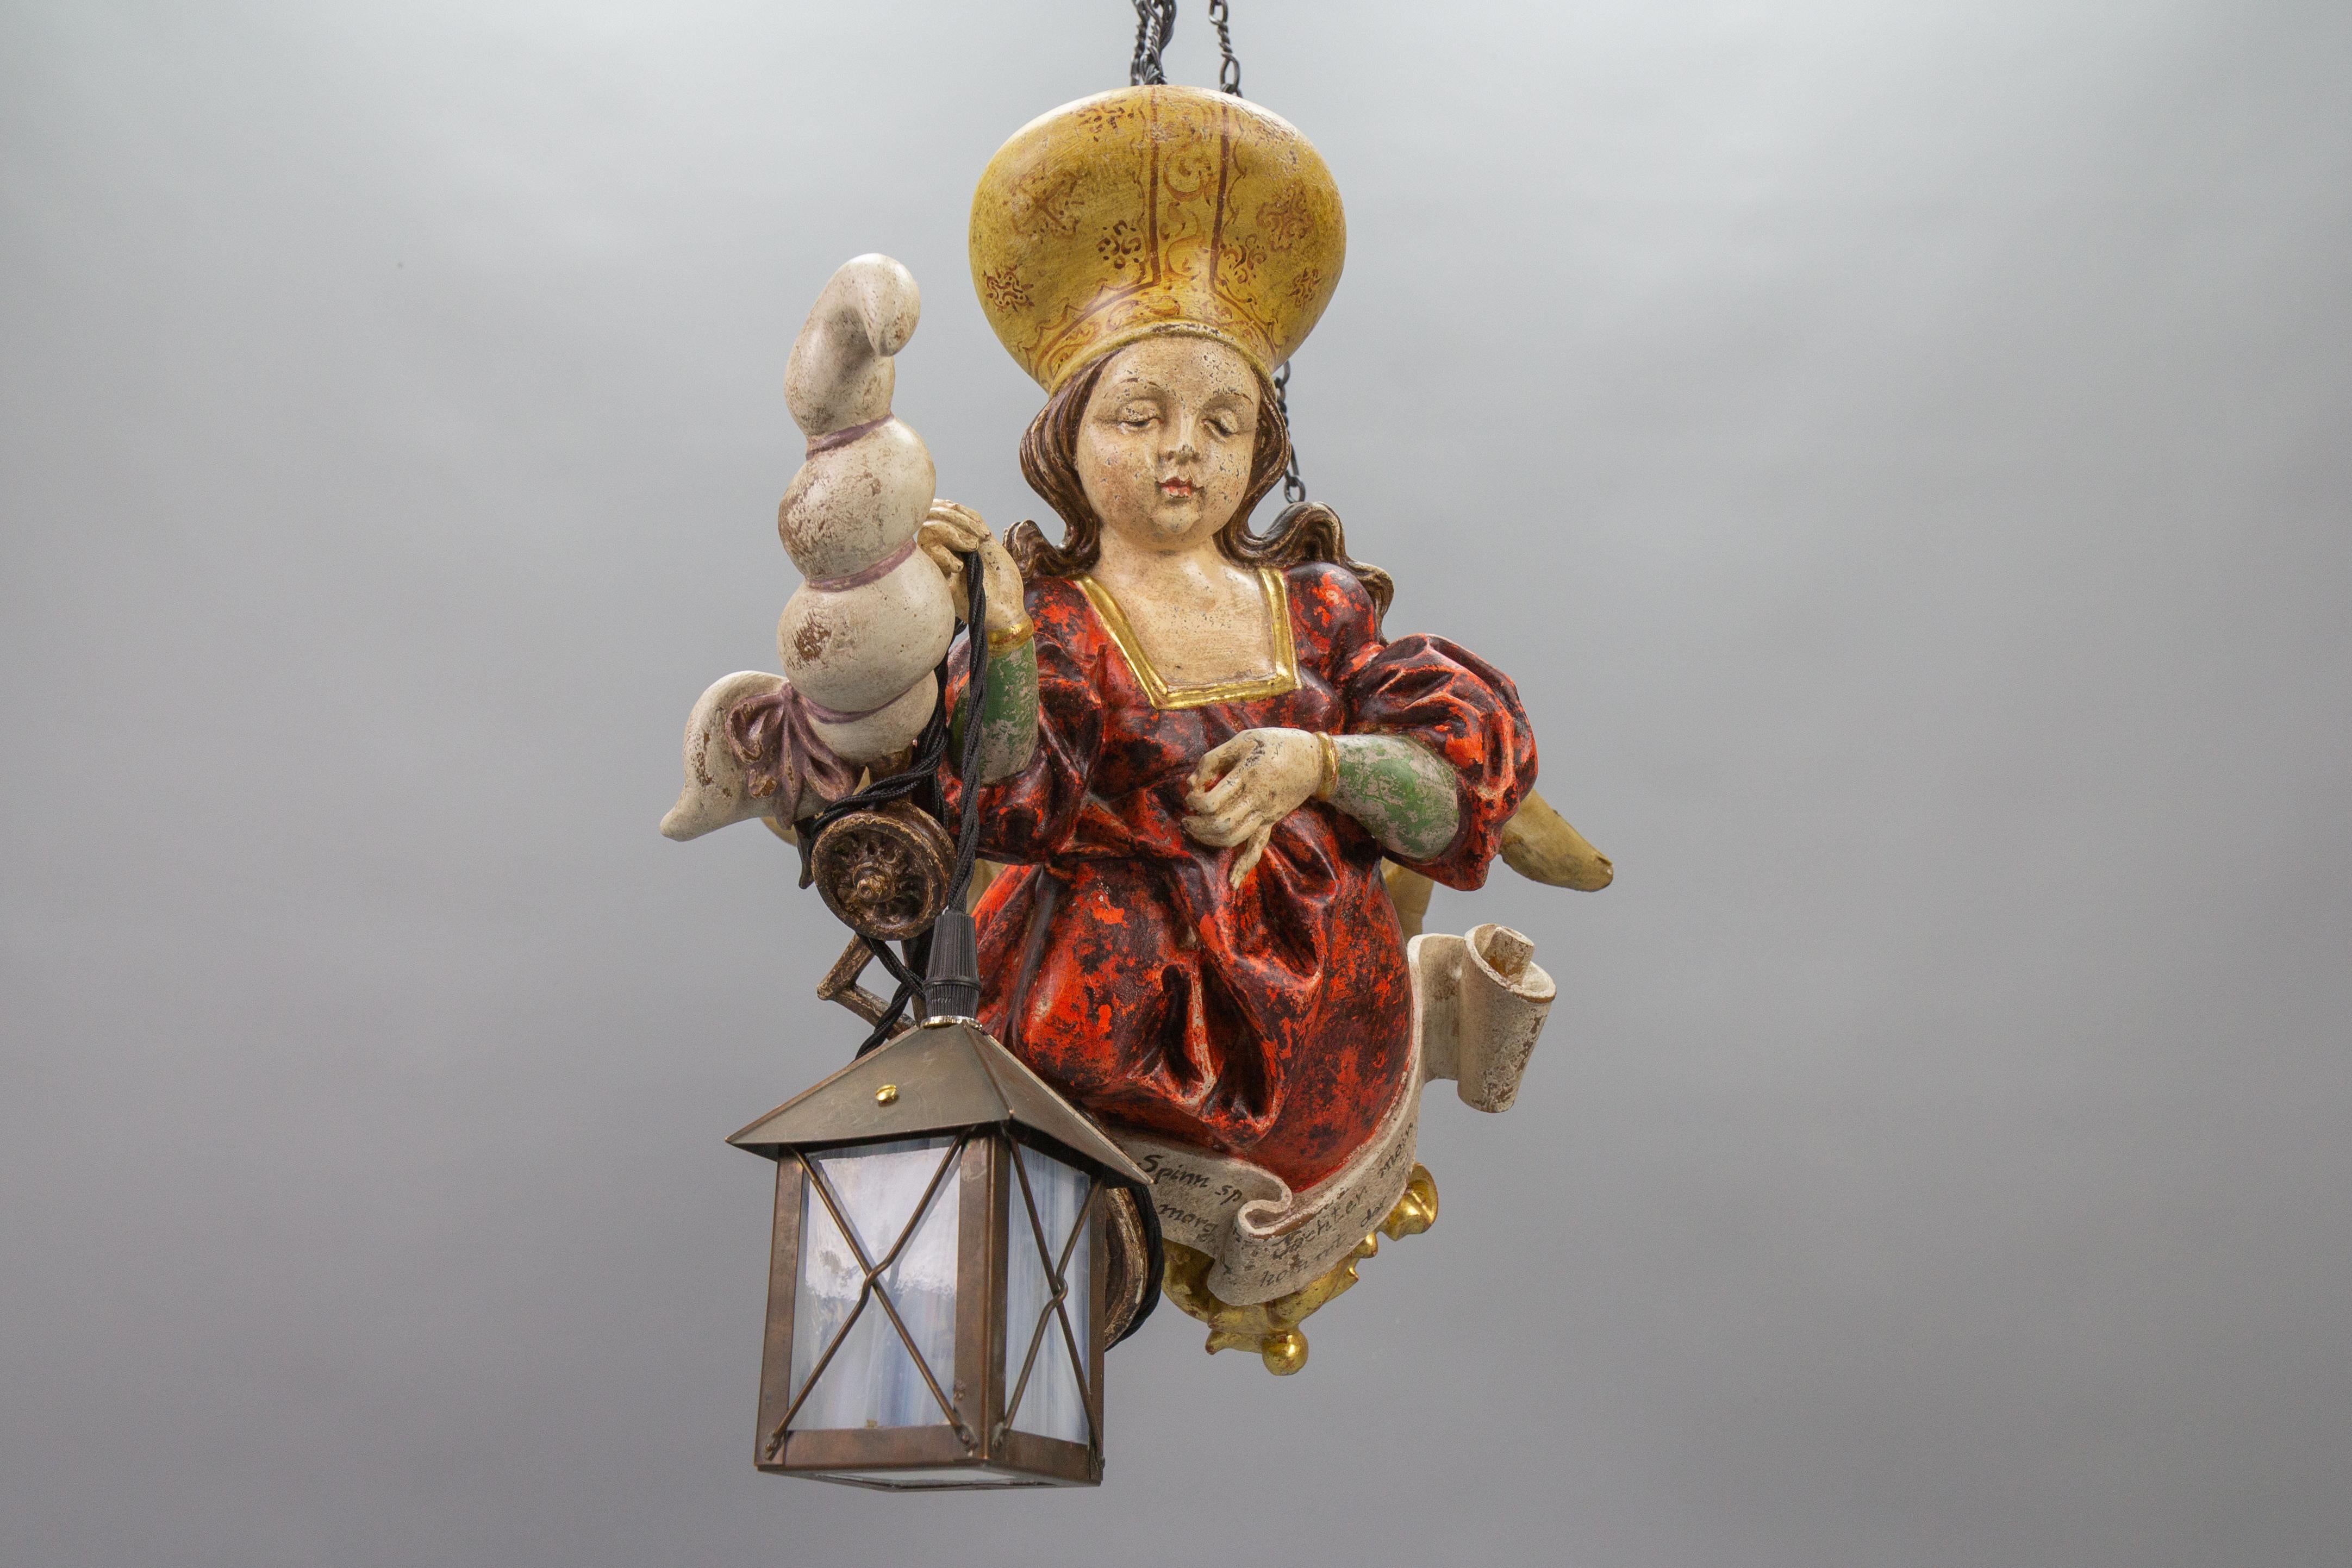 Ancienne lampe suspendue allemande Lüsterweibchen en bois polychrome avec lanterne, datant d'environ 1920.
Cet adorable Lüsterweibchen - lustre de taille compacte présente une figure magistralement sculptée d'une jeune femme en robe rouge avec un